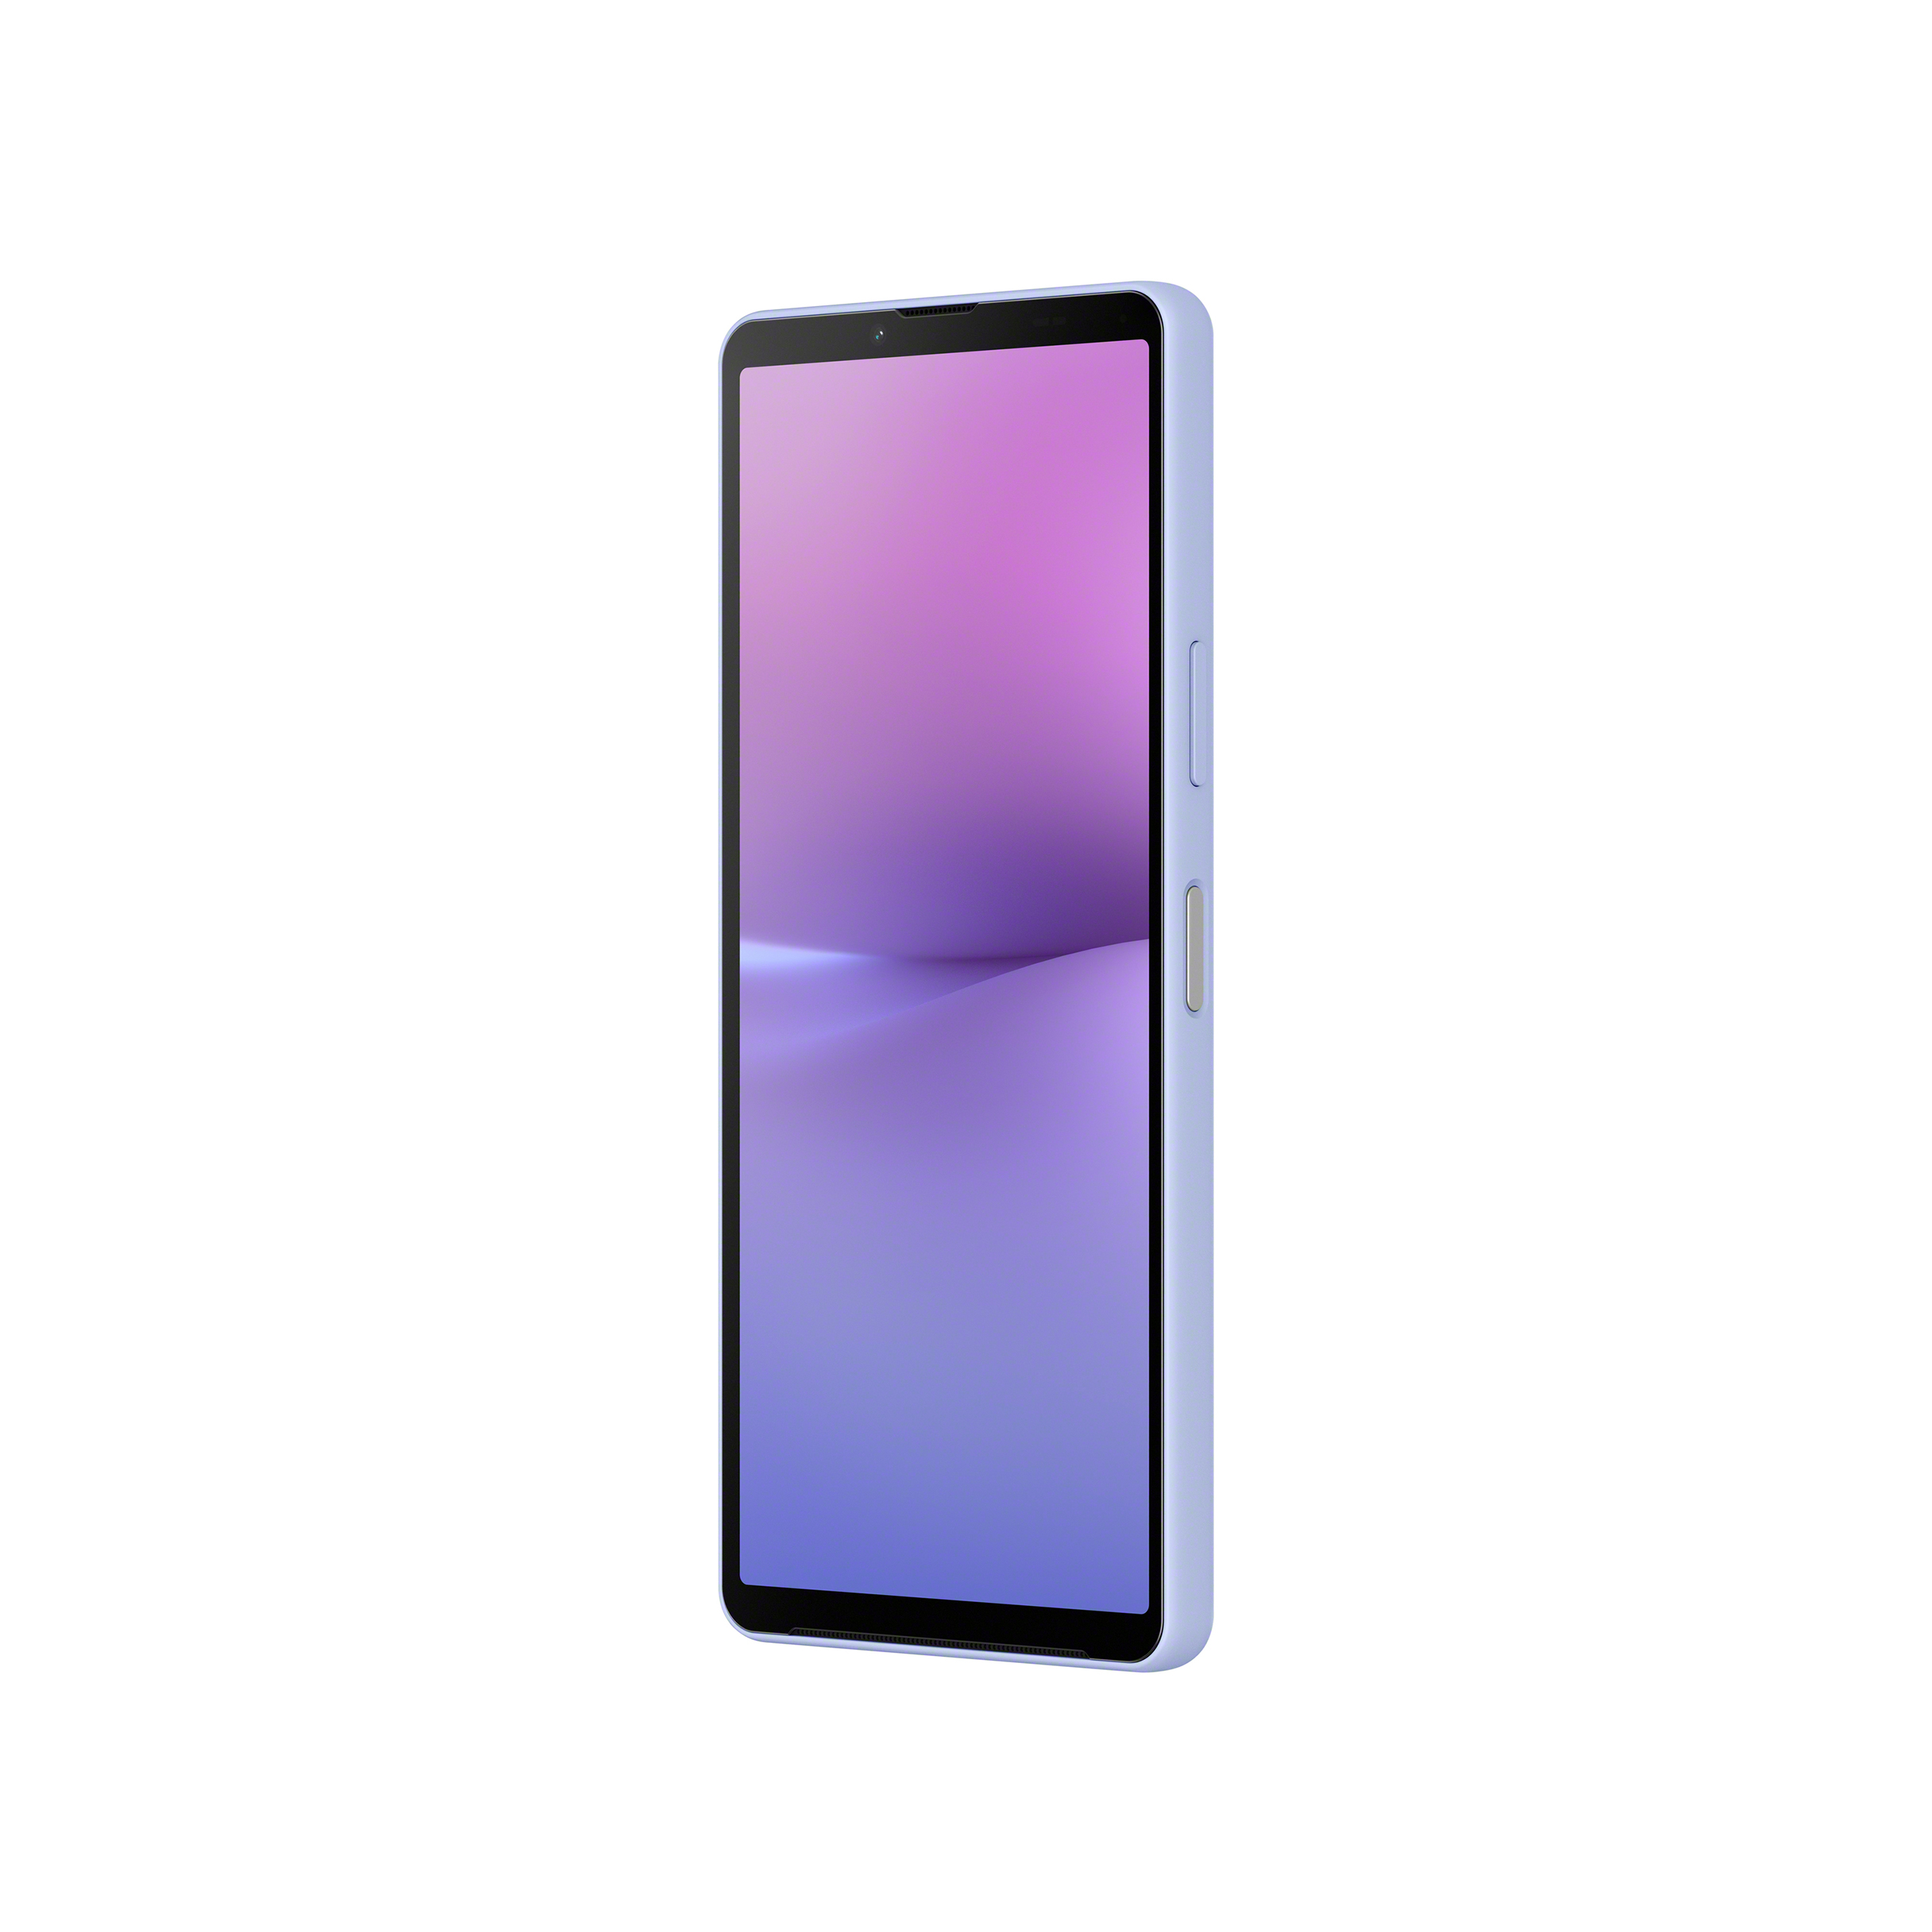 直立薰衣草紫 Xperia 10 V 智慧型手機展示正面斜側圖示